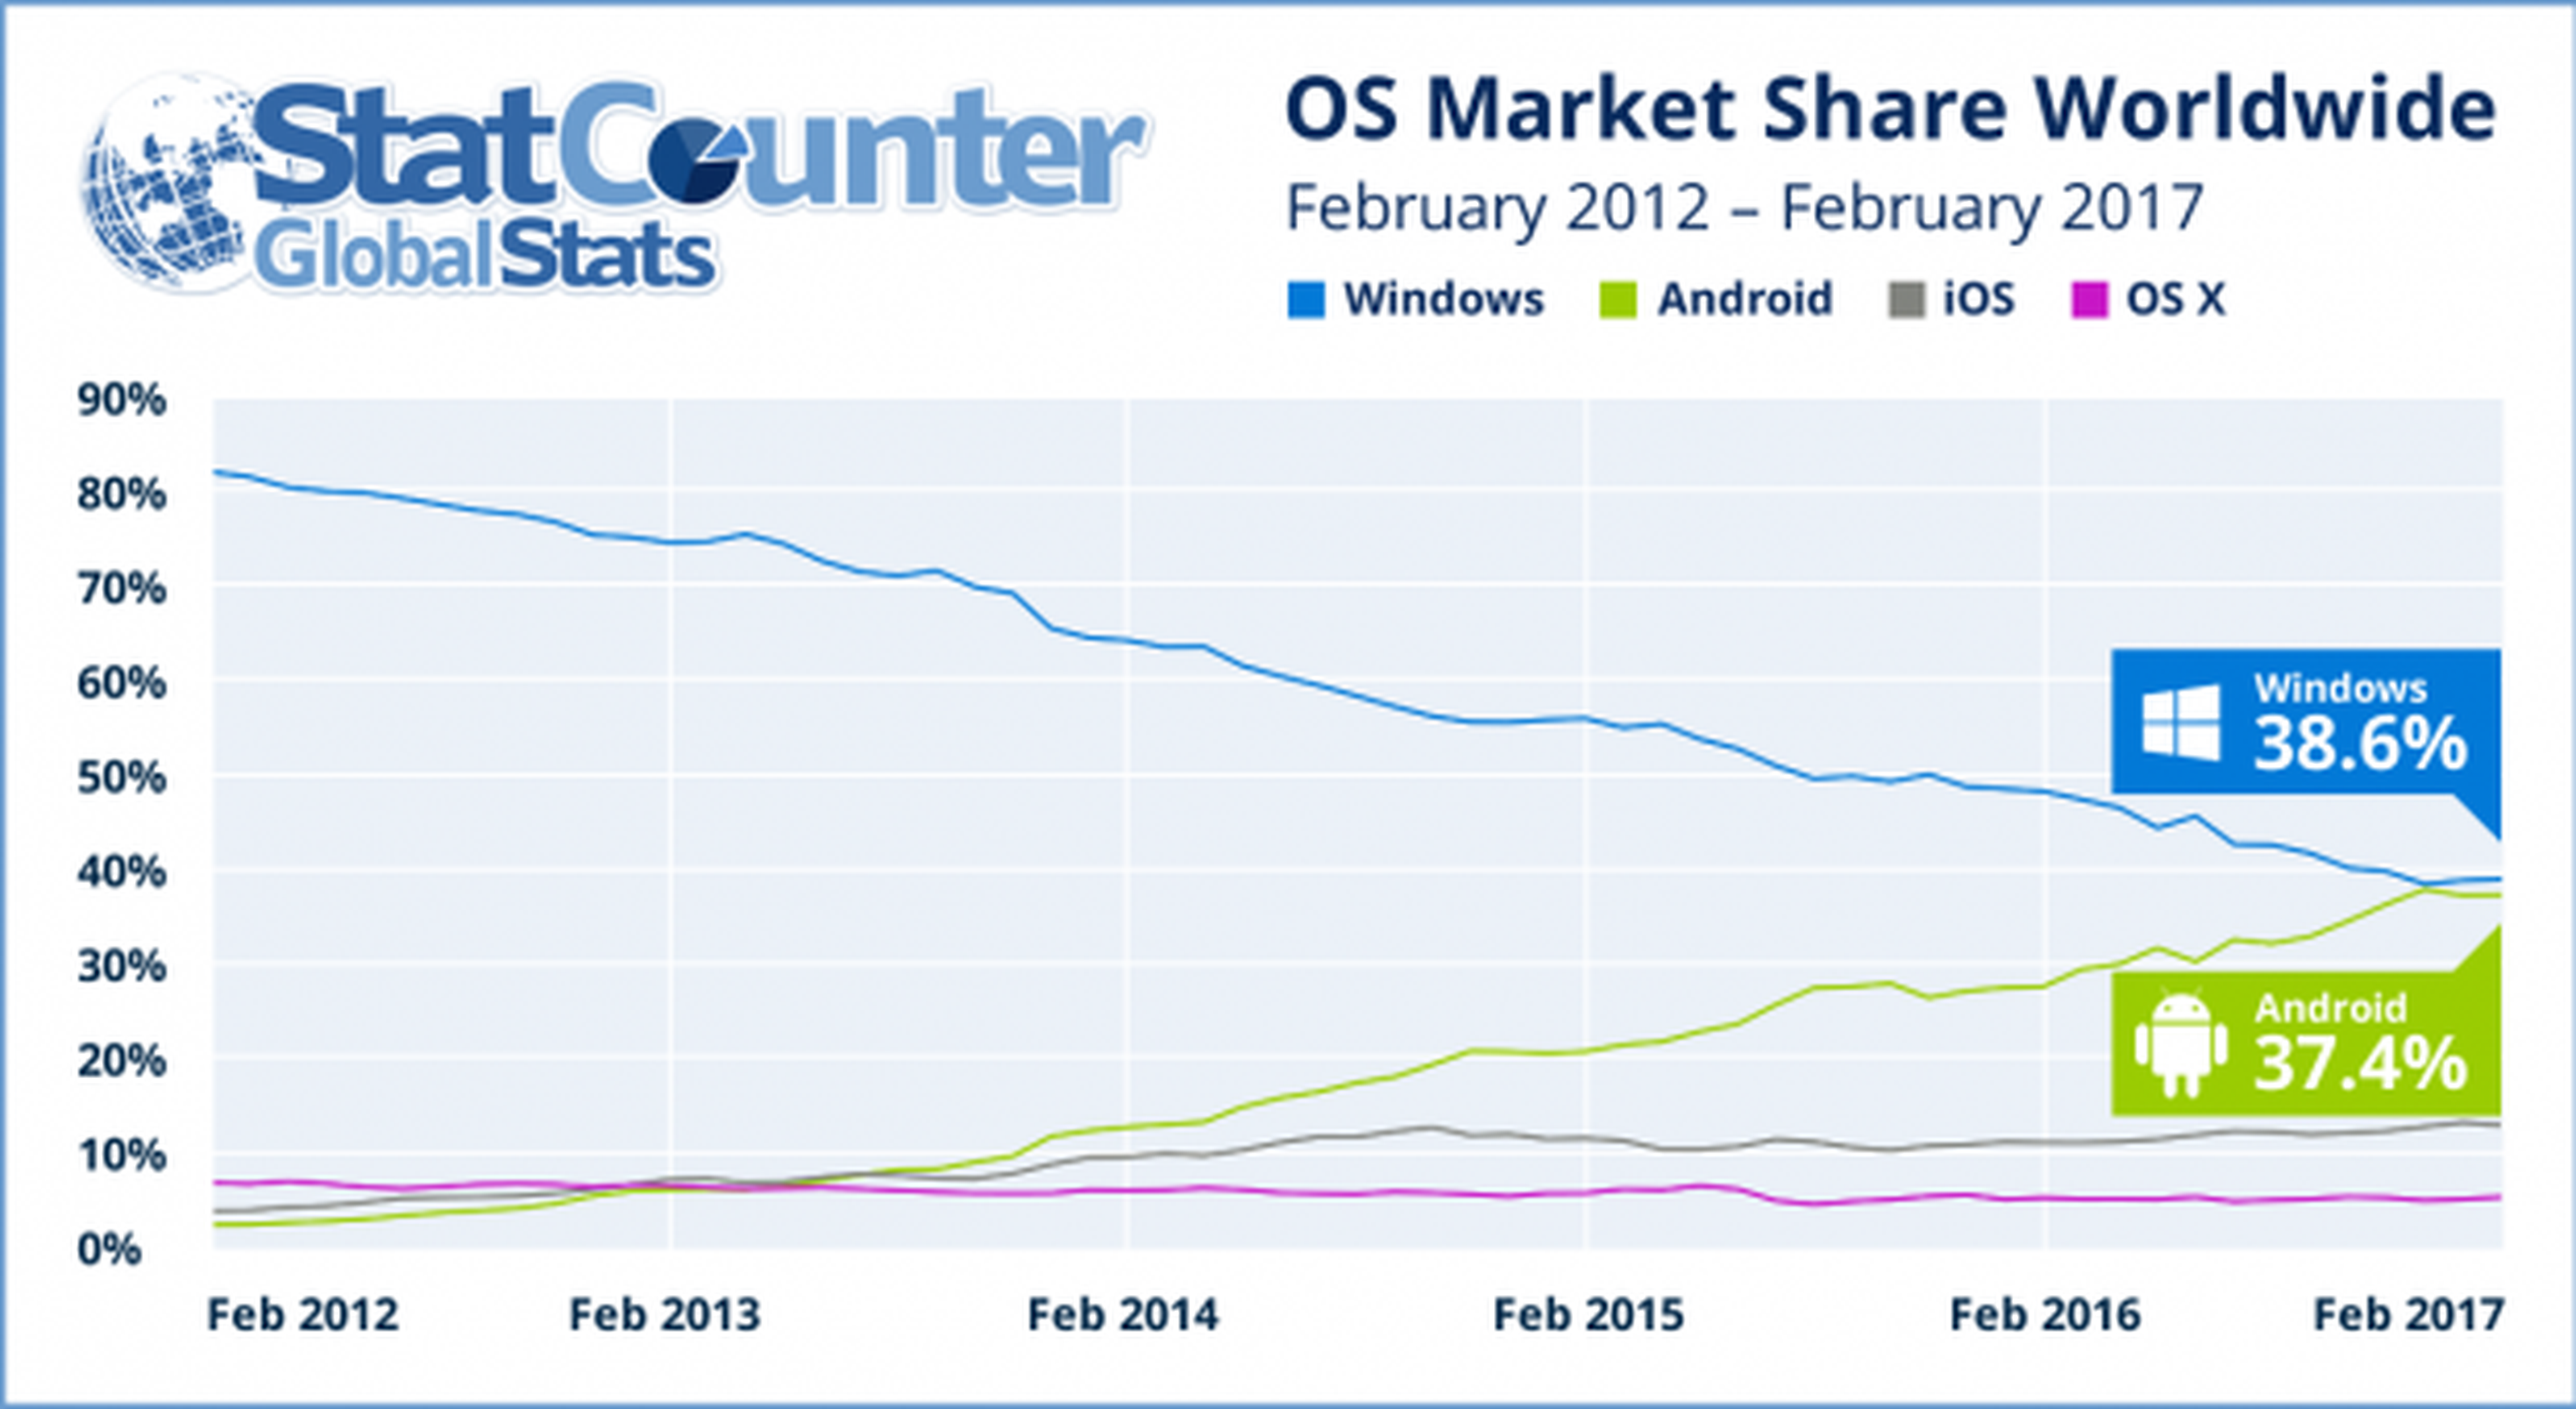 Android desafía a Windows como el sistema operativo más popular